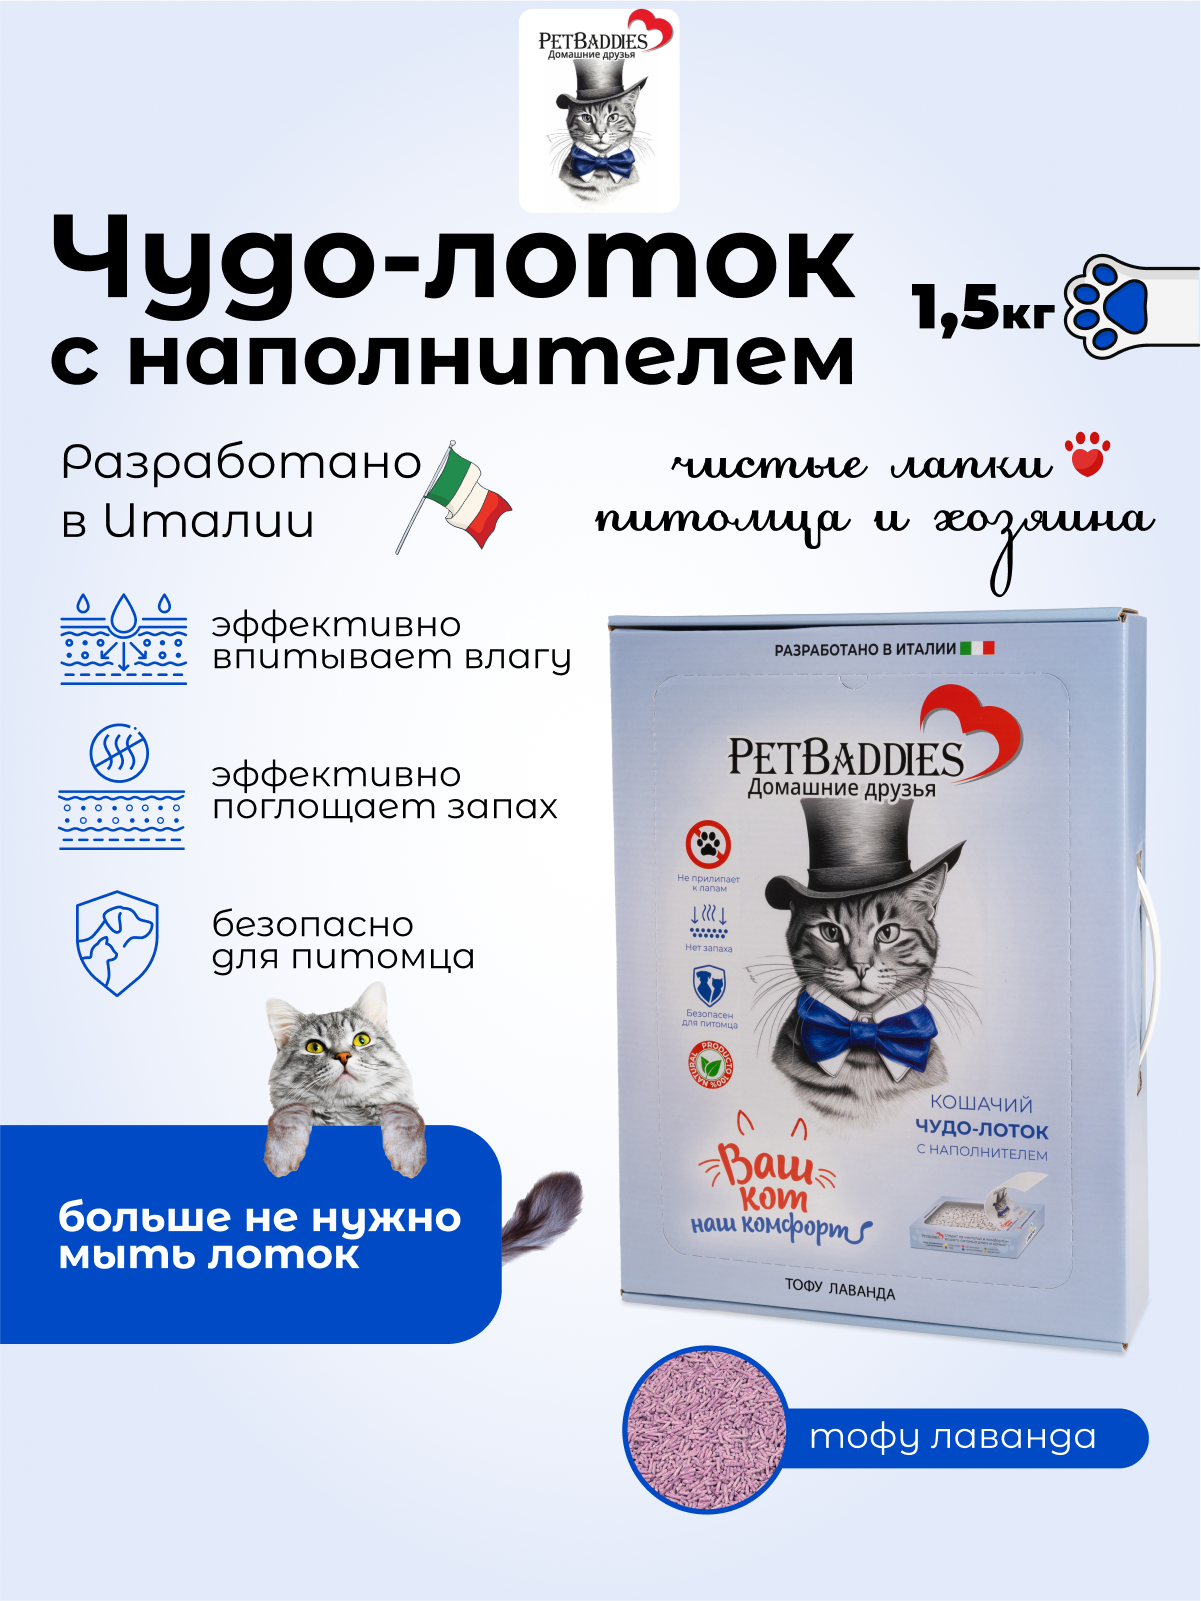 Наполнитель PetBaddies тофу лаванда 1,5 кг для кошачьего туалета в одноразовом лотке - фотография № 1